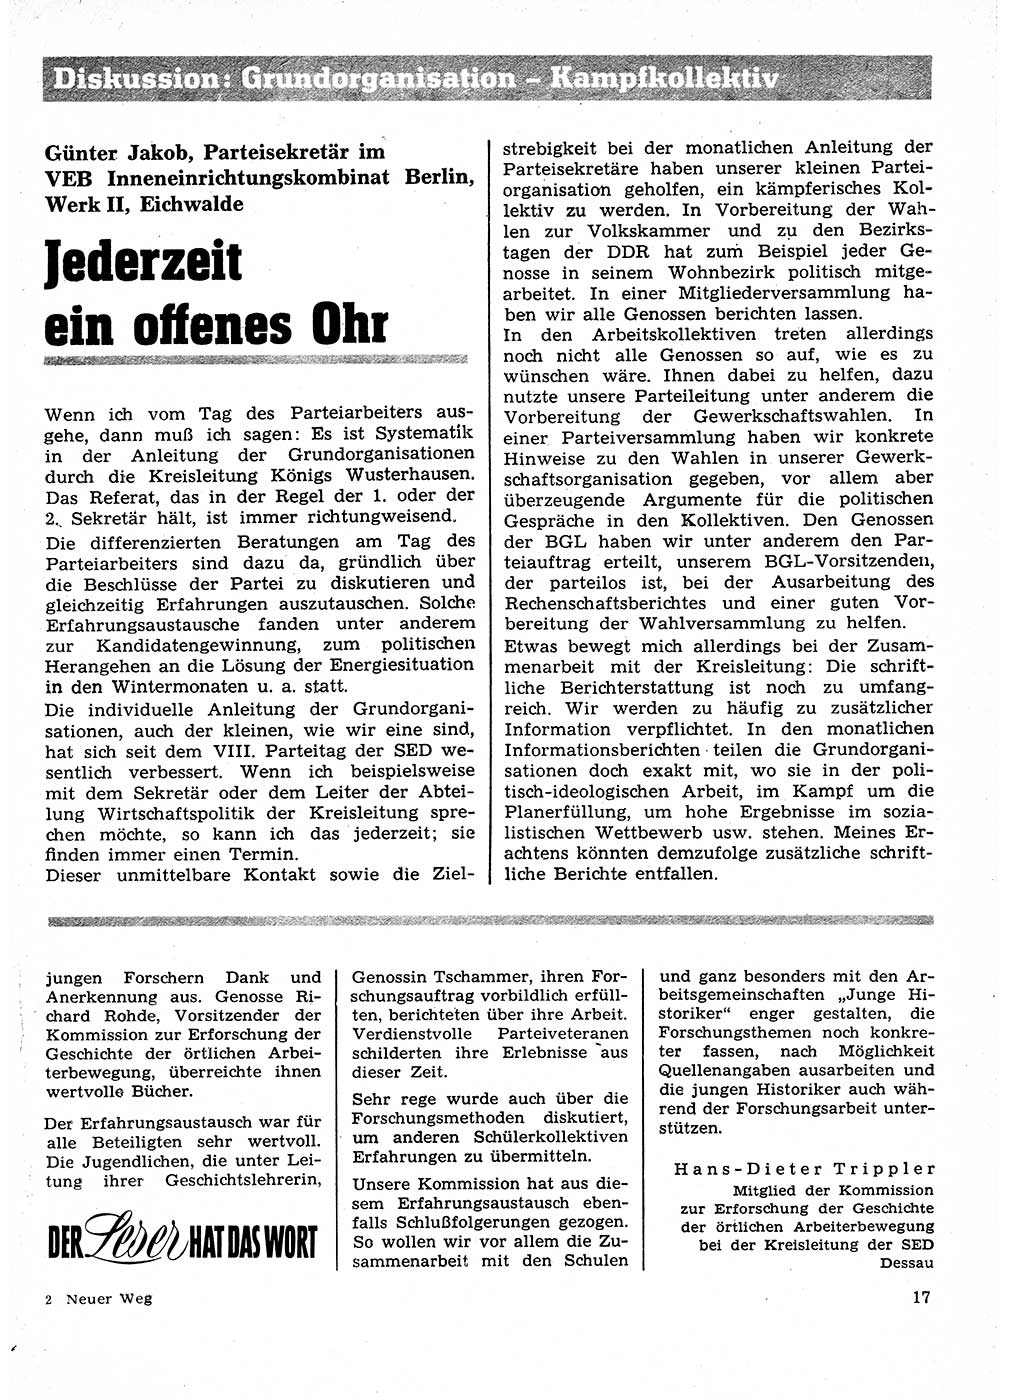 Neuer Weg (NW), Organ des Zentralkomitees (ZK) der SED (Sozialistische Einheitspartei Deutschlands) für Fragen des Parteilebens, 27. Jahrgang [Deutsche Demokratische Republik (DDR)] 1972, Seite 17 (NW ZK SED DDR 1972, S. 17)